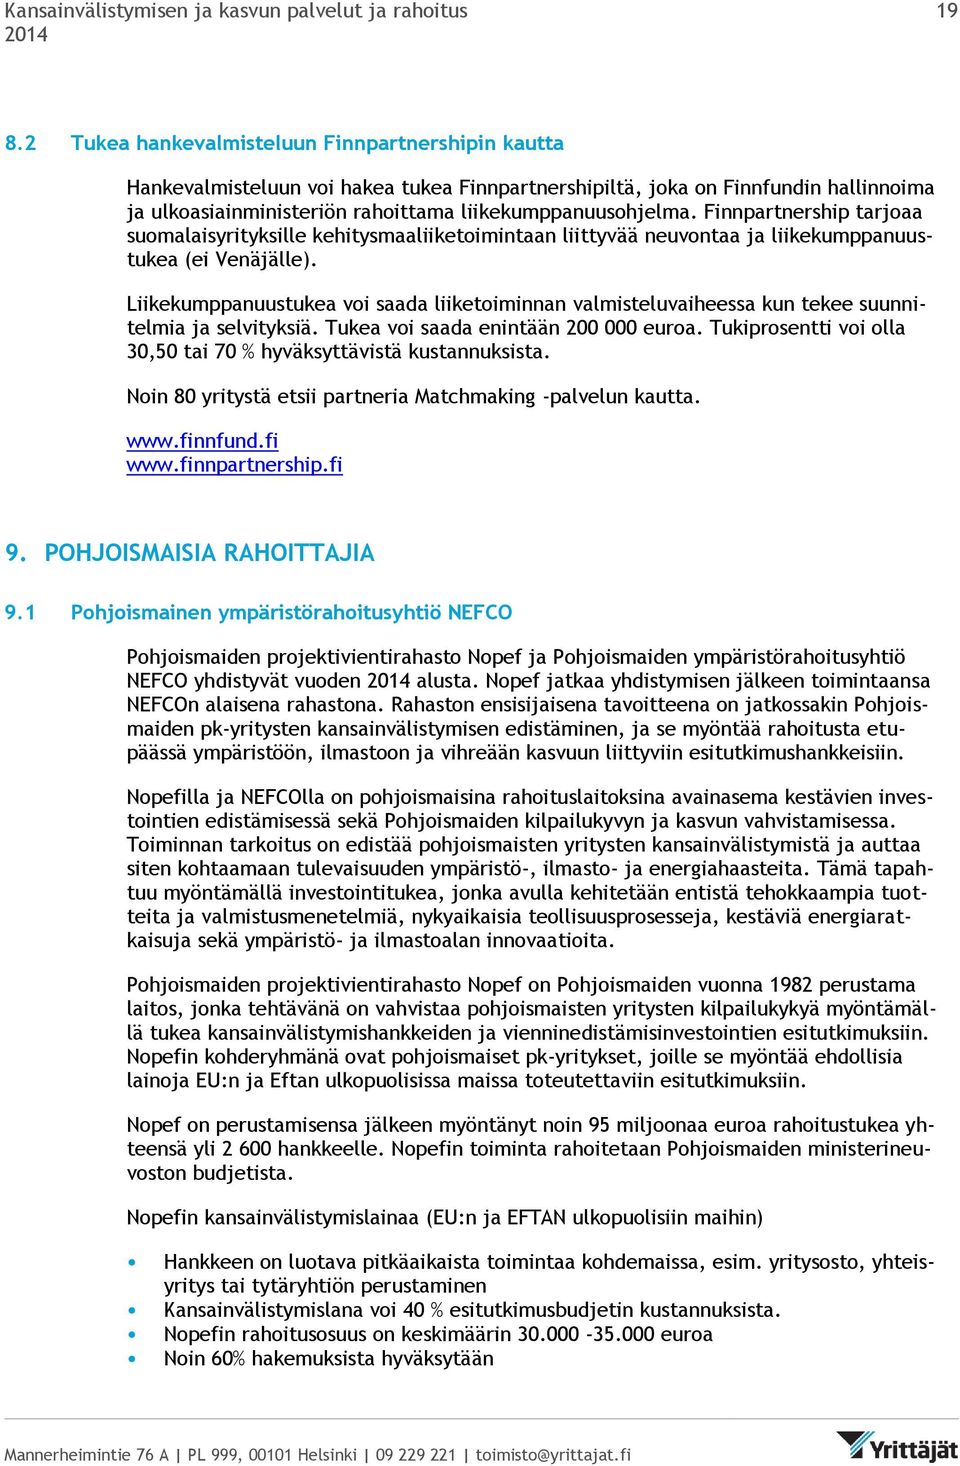 Finnpartnership tarjoaa suomalaisyrityksille kehitysmaaliiketoimintaan liittyvää neuvontaa ja liikekumppanuustukea (ei Venäjälle).